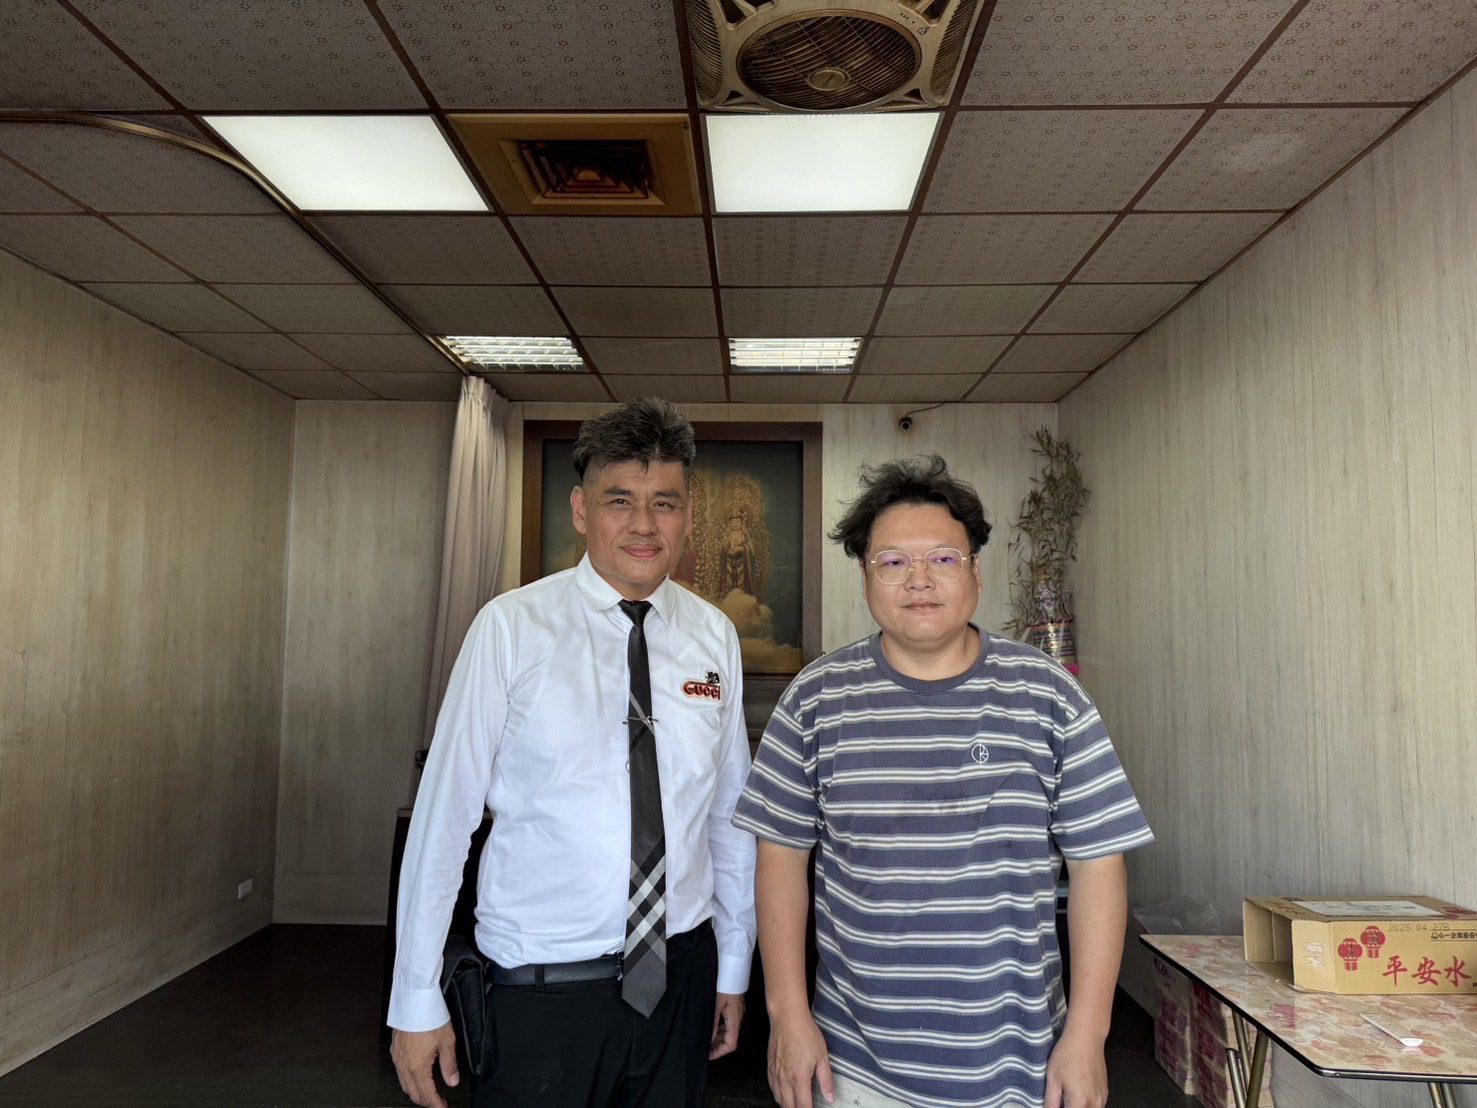 高雄市保全公會理事長陳紀孝(左)與前金區長生里里長陳宗佐(右`)都熱心公益。